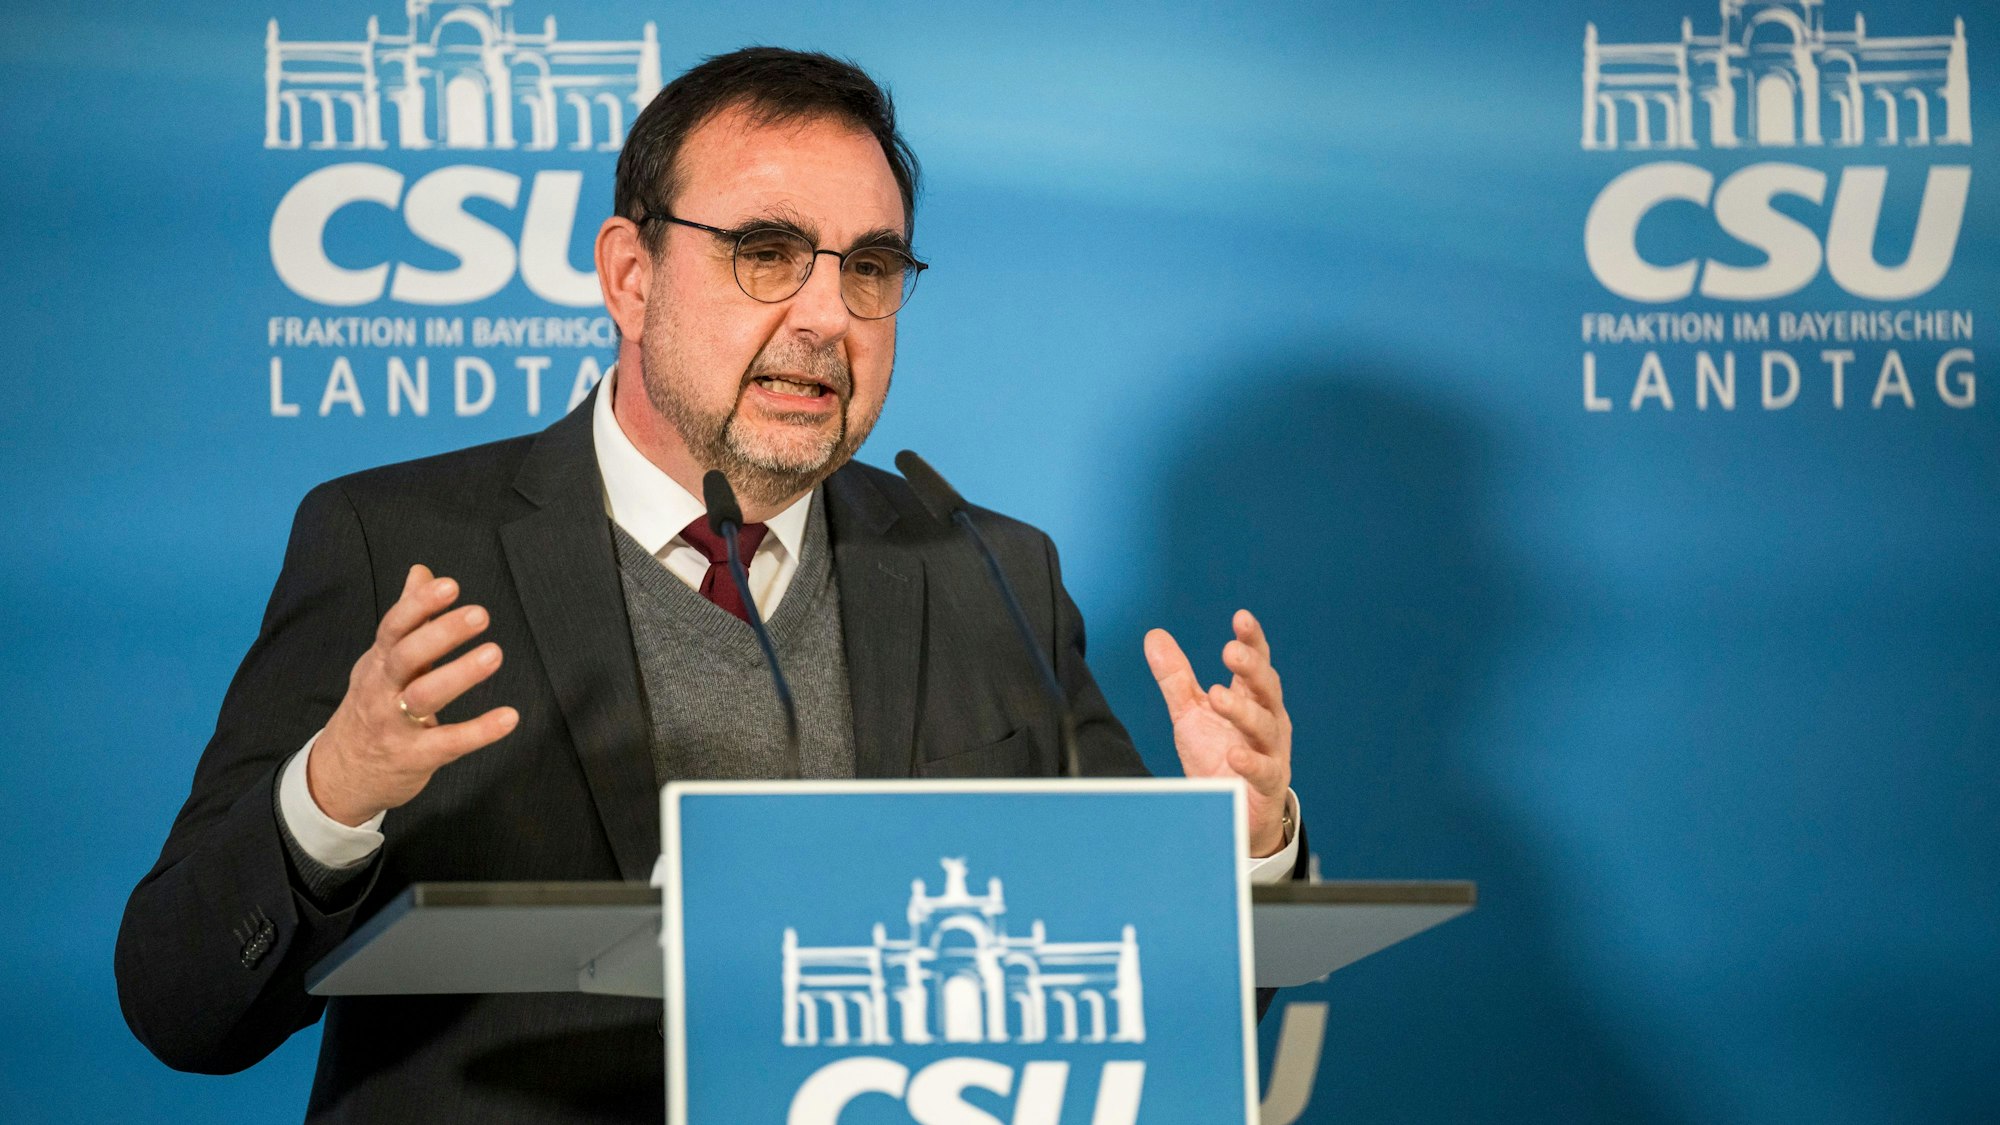 Klaus Holetschek (CSU), CSU-Fraktionsvorsitzender im Bayerischen Landtag, spricht bei der Pressekonferenz zur Winterklausur der CSU-Landtagsfraktion.